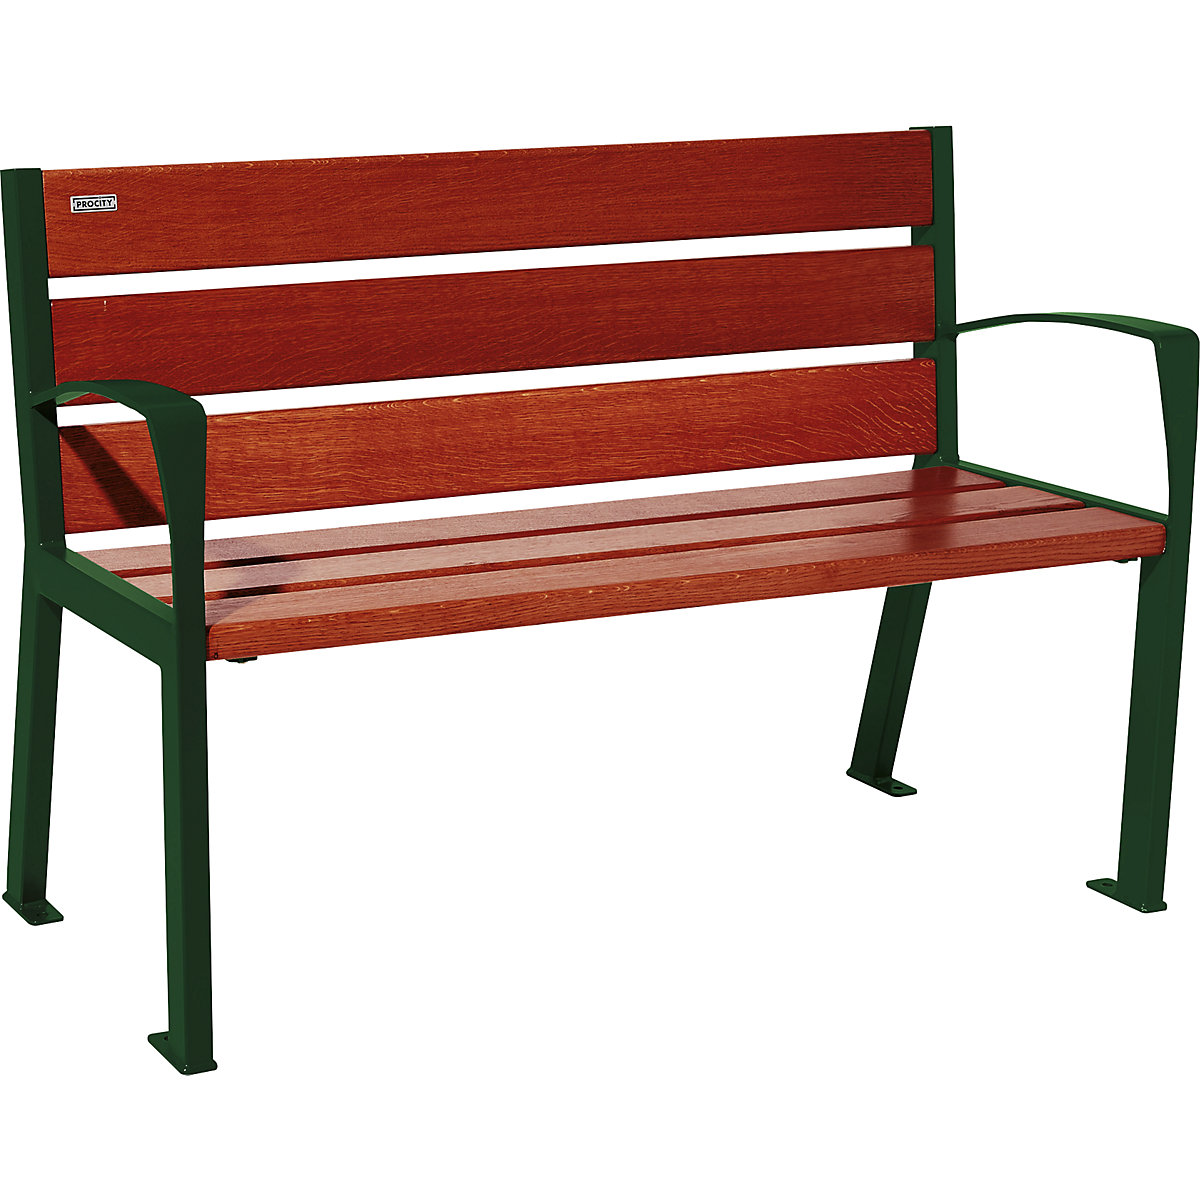 PROCITY – Drvena klupa za sjedenje SILAOS® s naslonom za leđa, visina 866 mm, dužina 1200 mm, u mahovina zelenoj boji, mahagonij